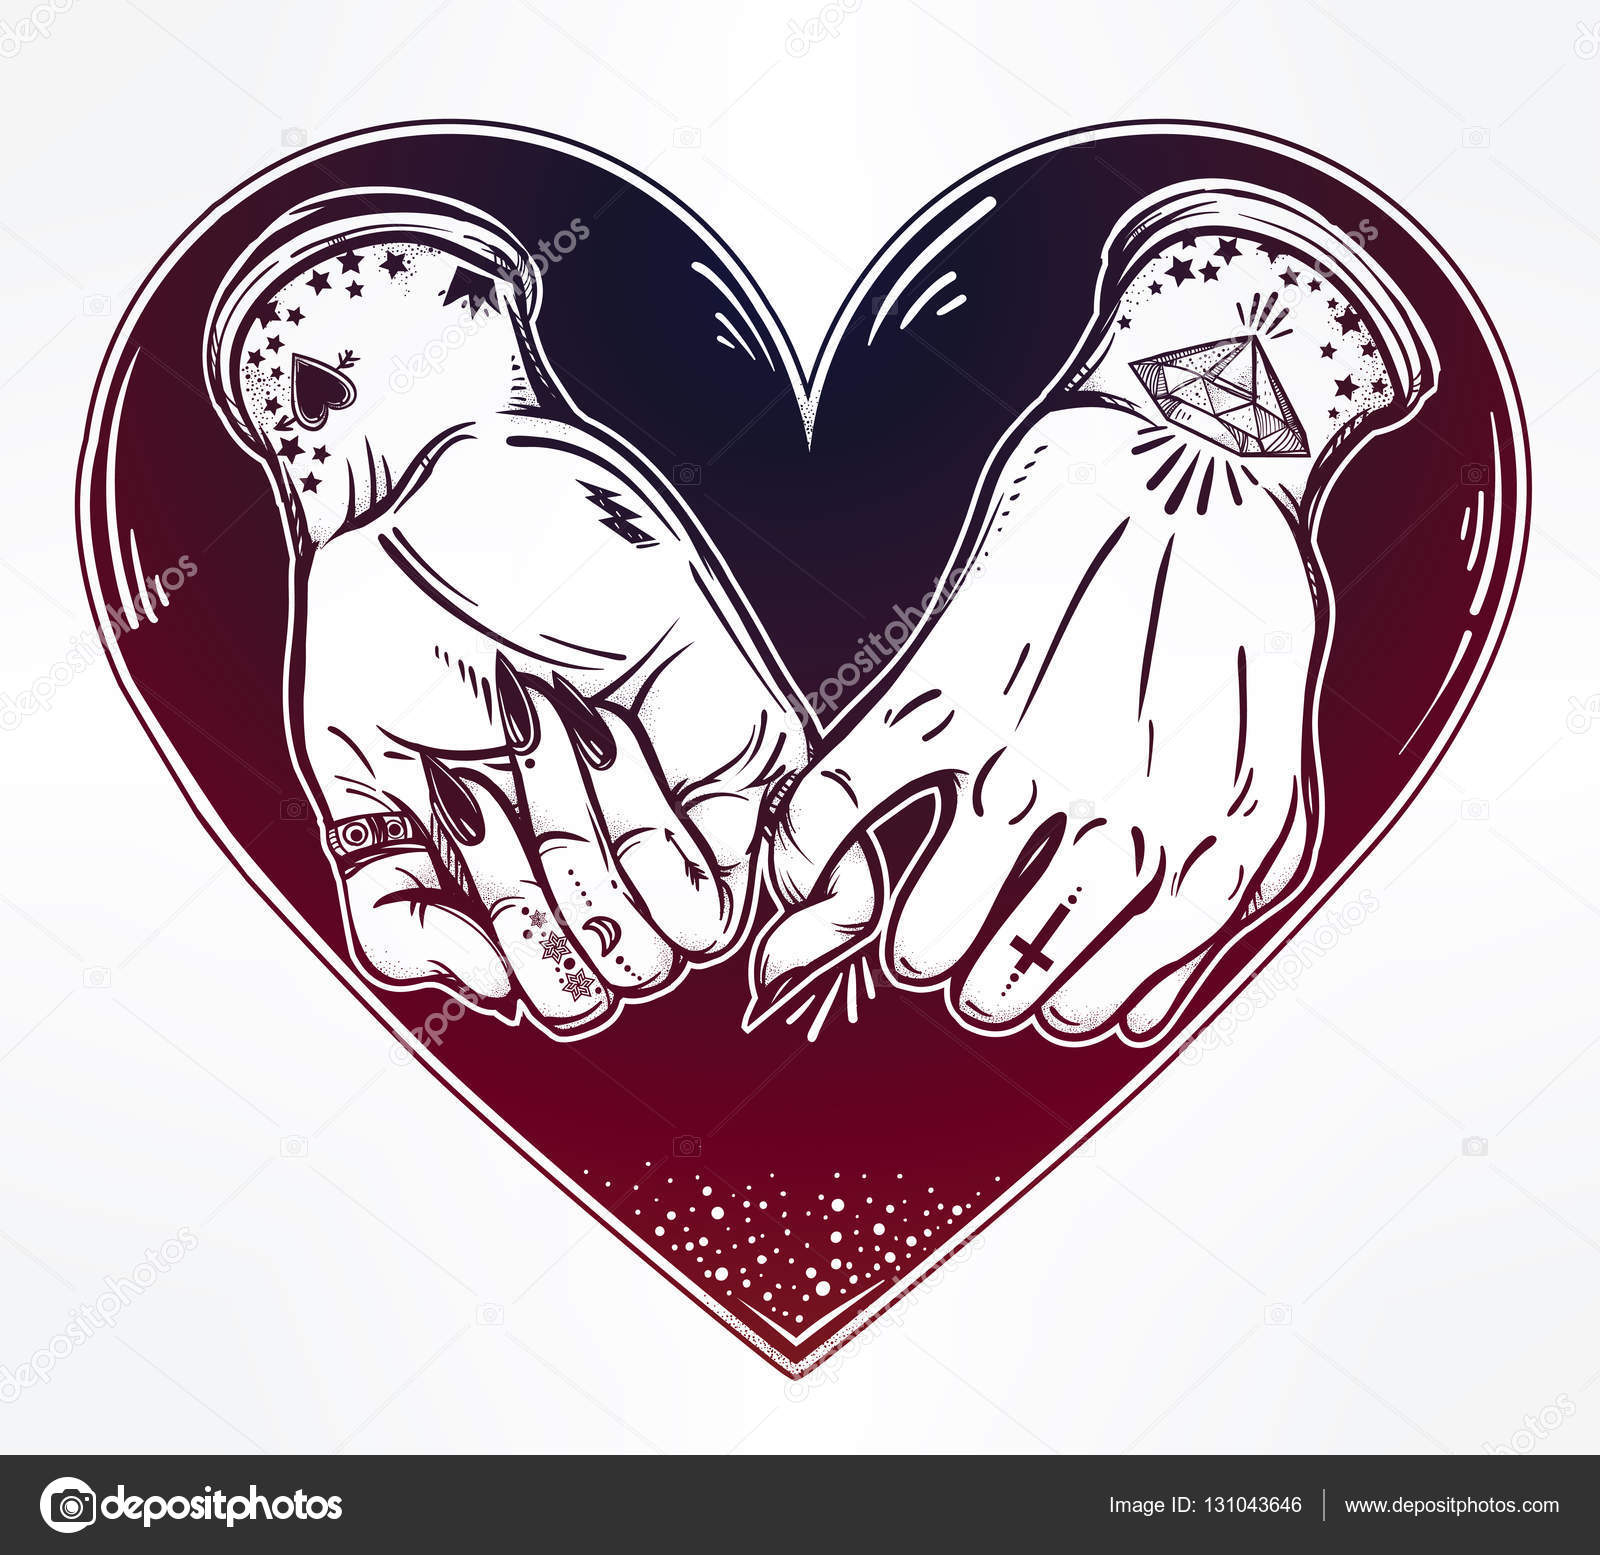 Promessa di Pinky mano che tiene dentro il cuore Le mani sono tatuate Ghetto e gotico stile ispirato Illustrazione vettoriale isolato Disegno del